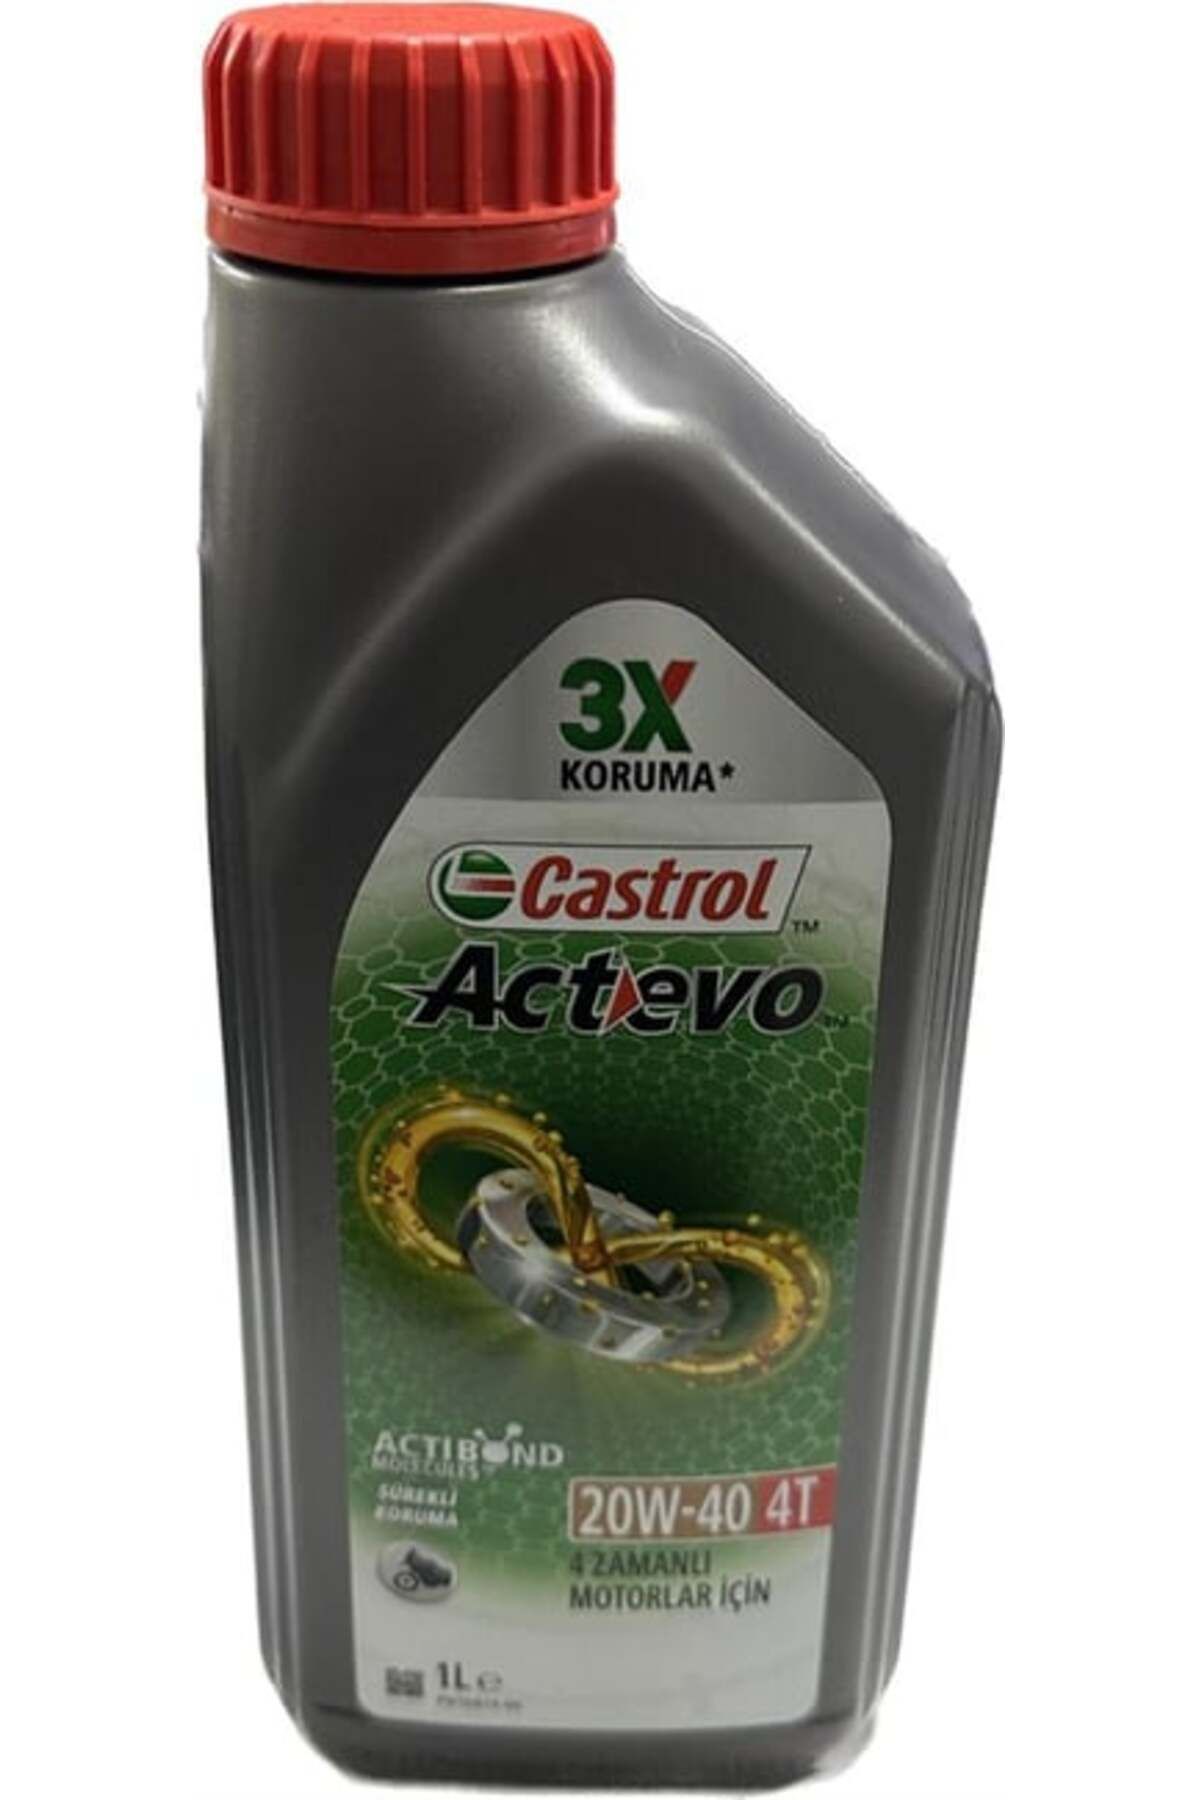 Castrol ACTEVO 4T ( 20W-40 ) YAĞ 1LT. CASTROL